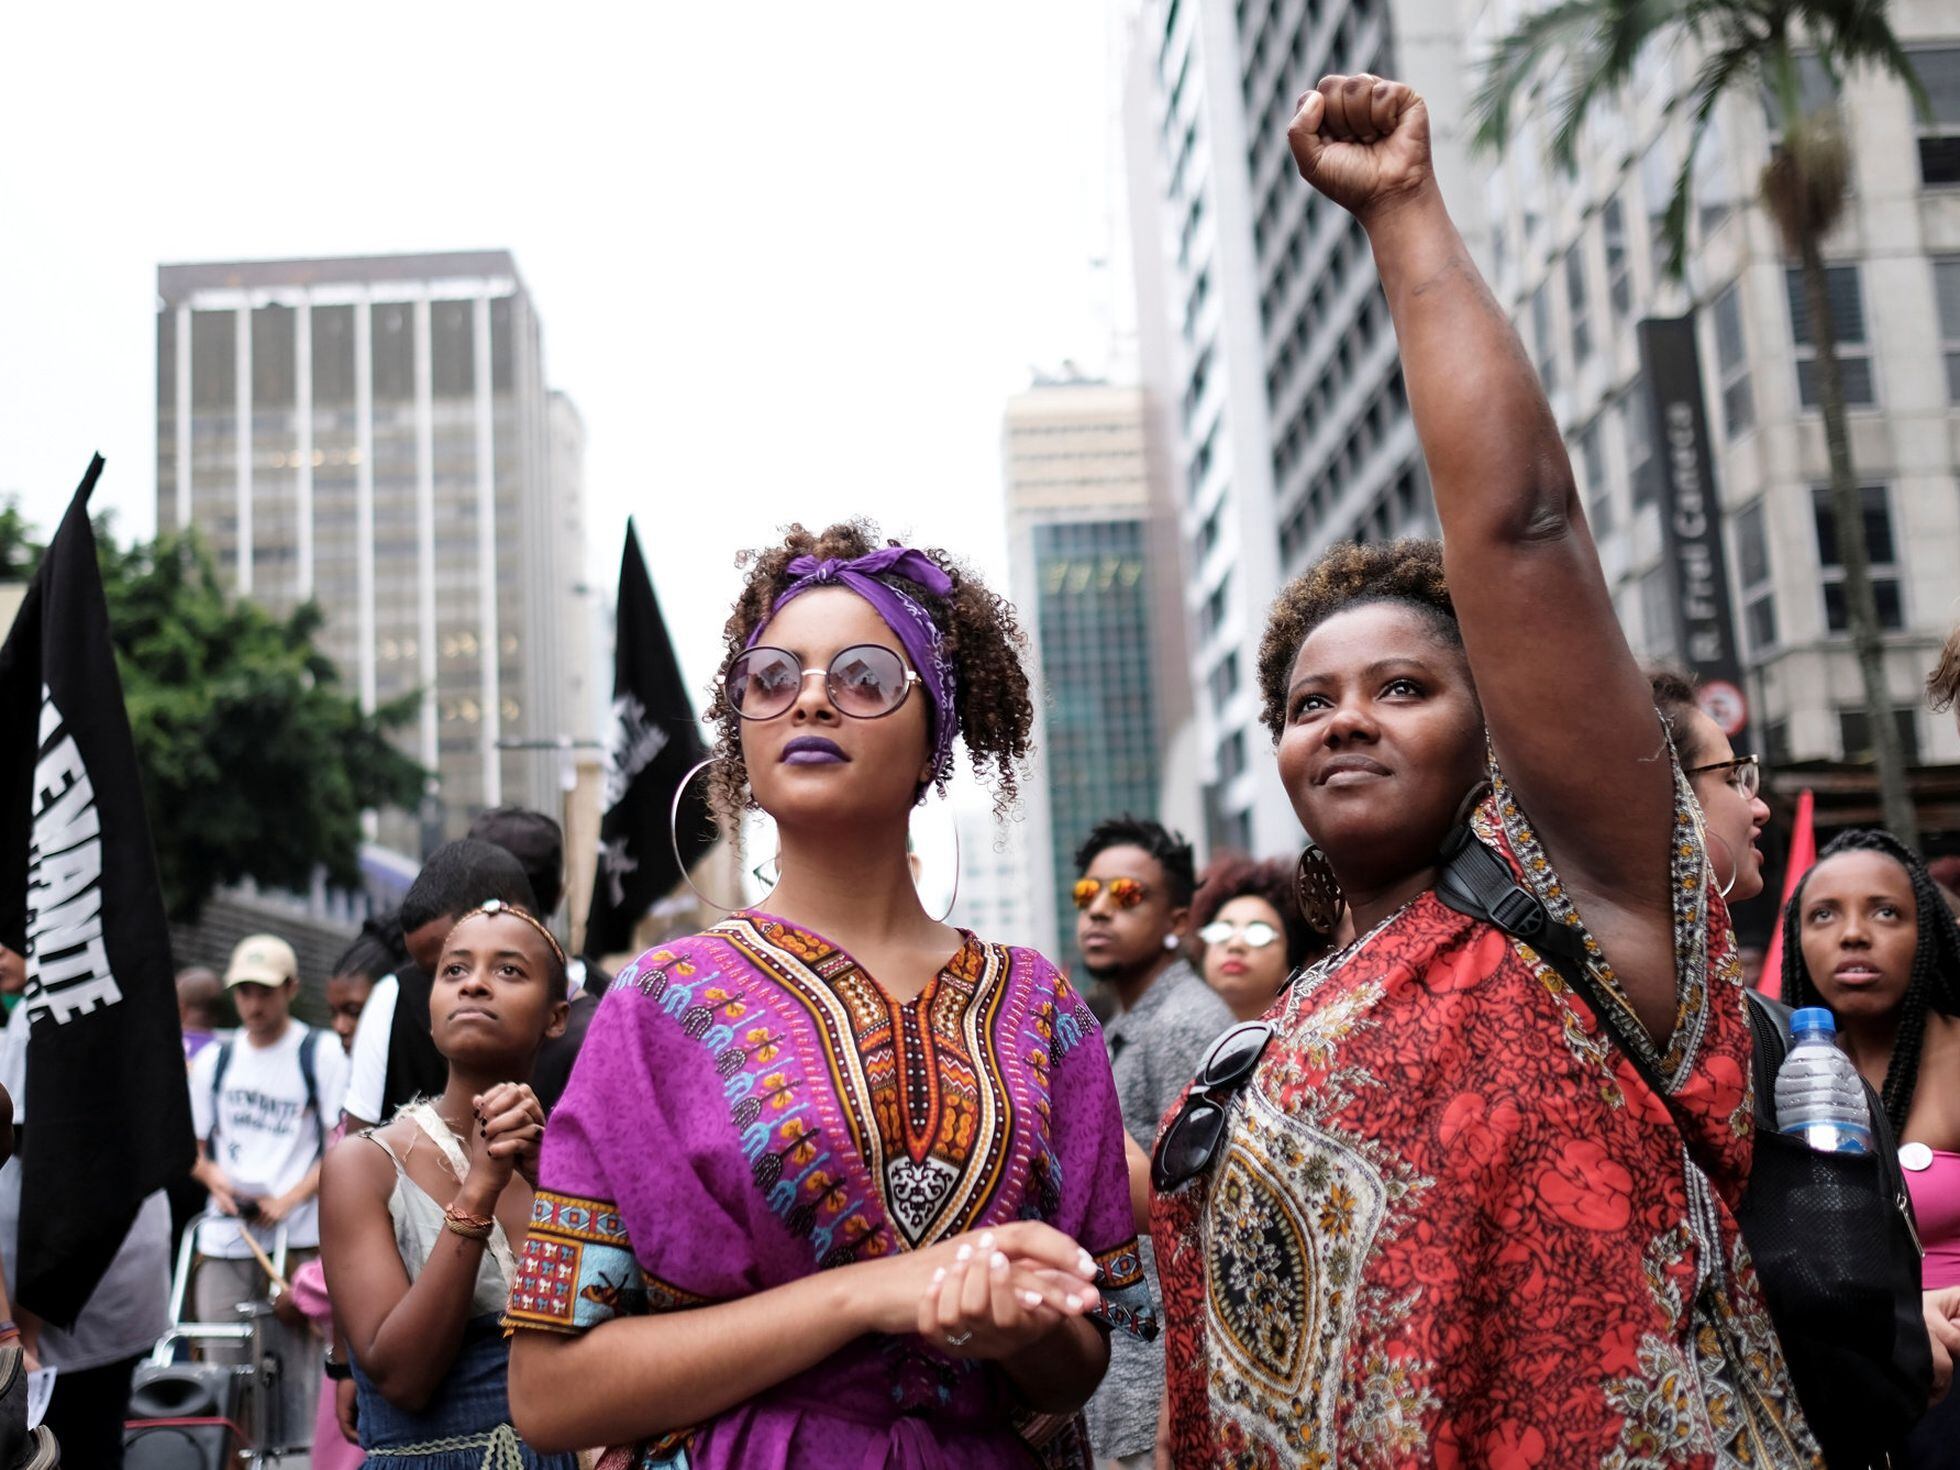 O que é ser mulher negra no Brasil? Vamos falar sobre isso!